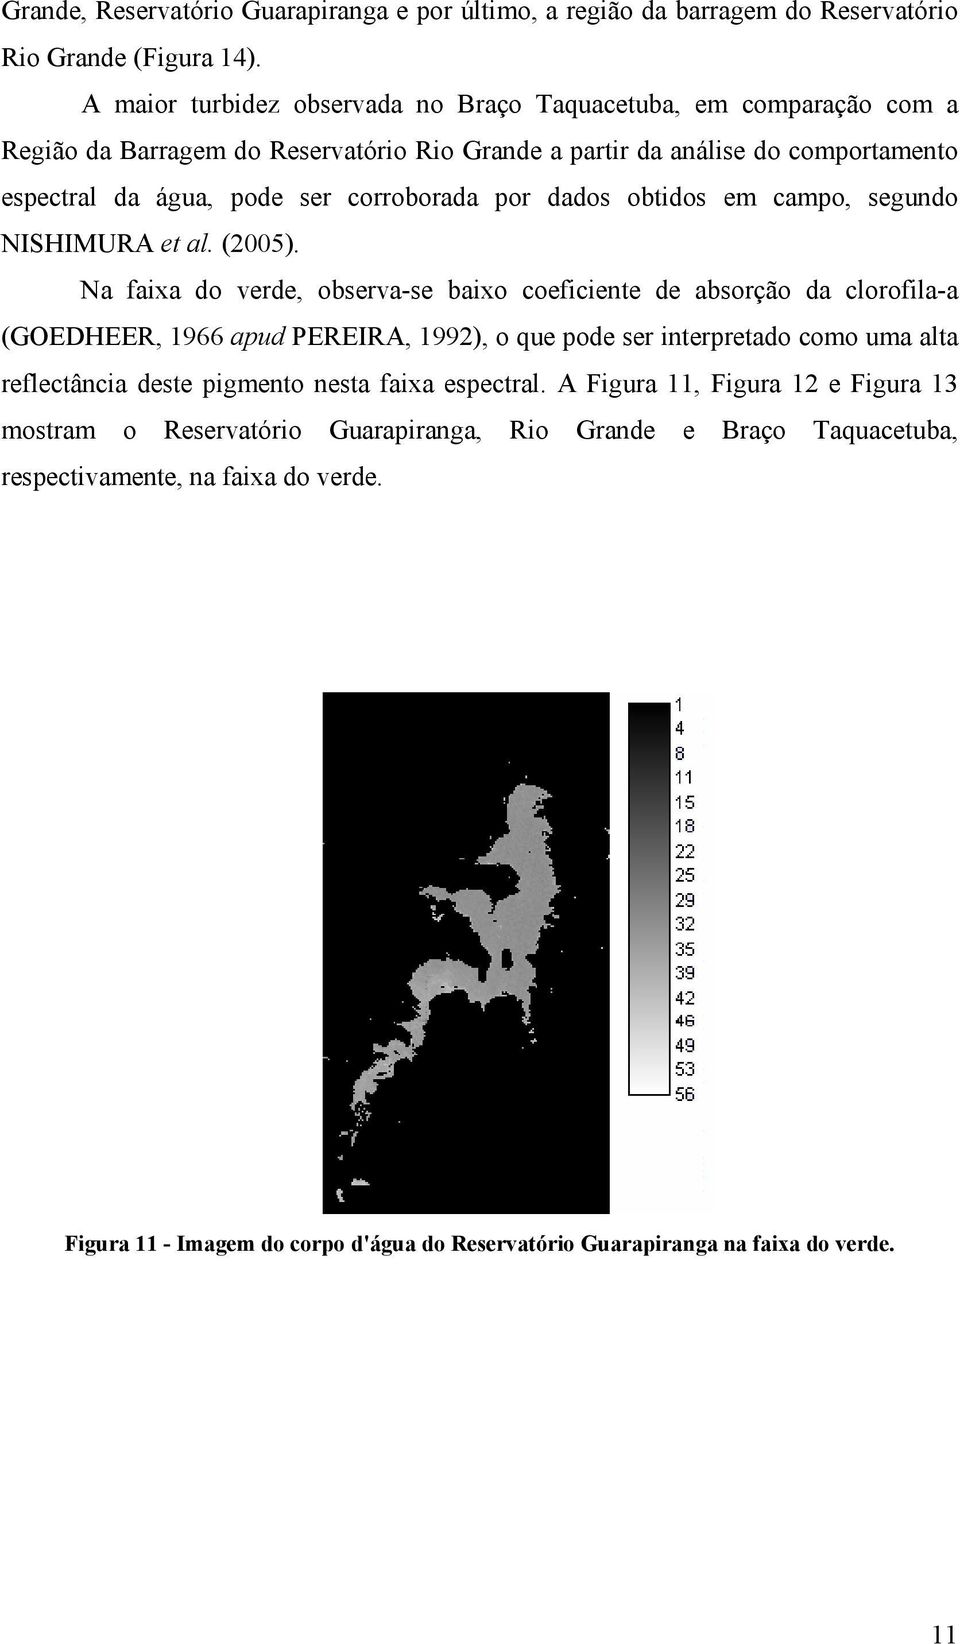 dados obtidos em campo, segundo NISHIMURA et al. (2005).